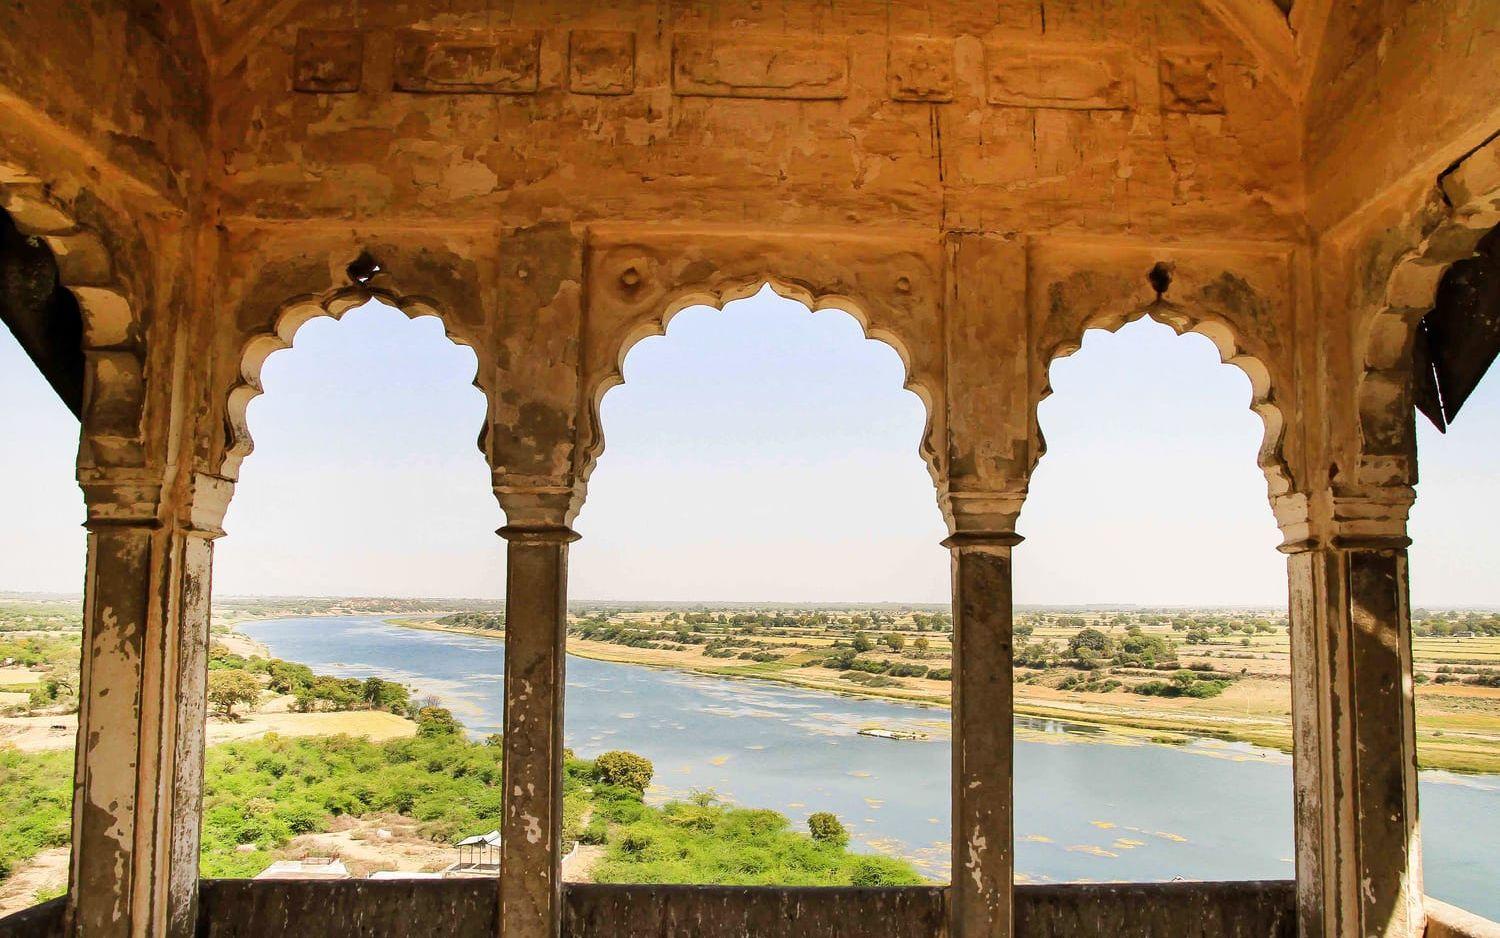 Från fortet syns bland annat floden Parvati. 